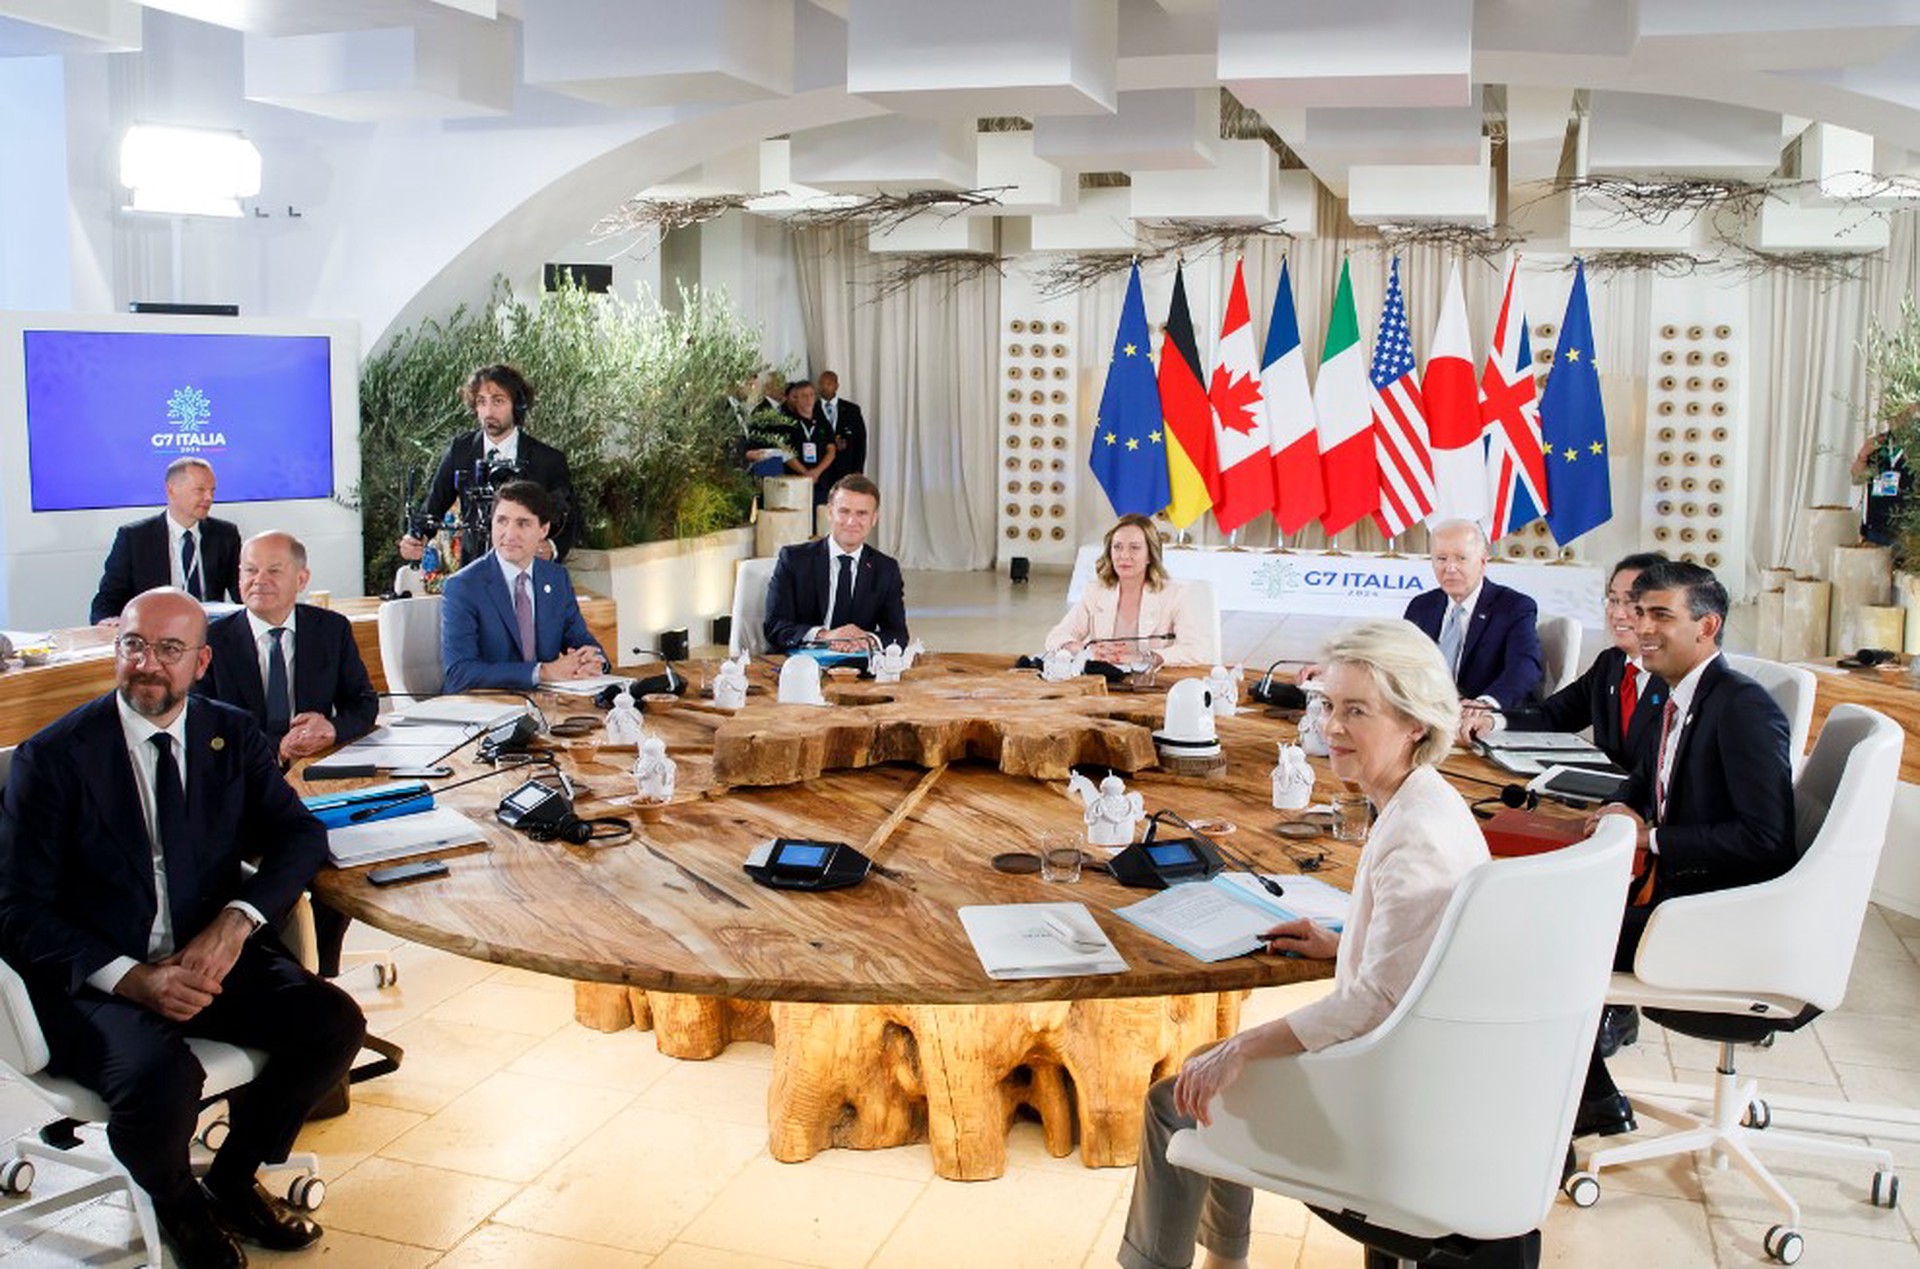 «Ослабленные лидеры Запада»: NYT опубликовала статью о встрече G7 в Италии